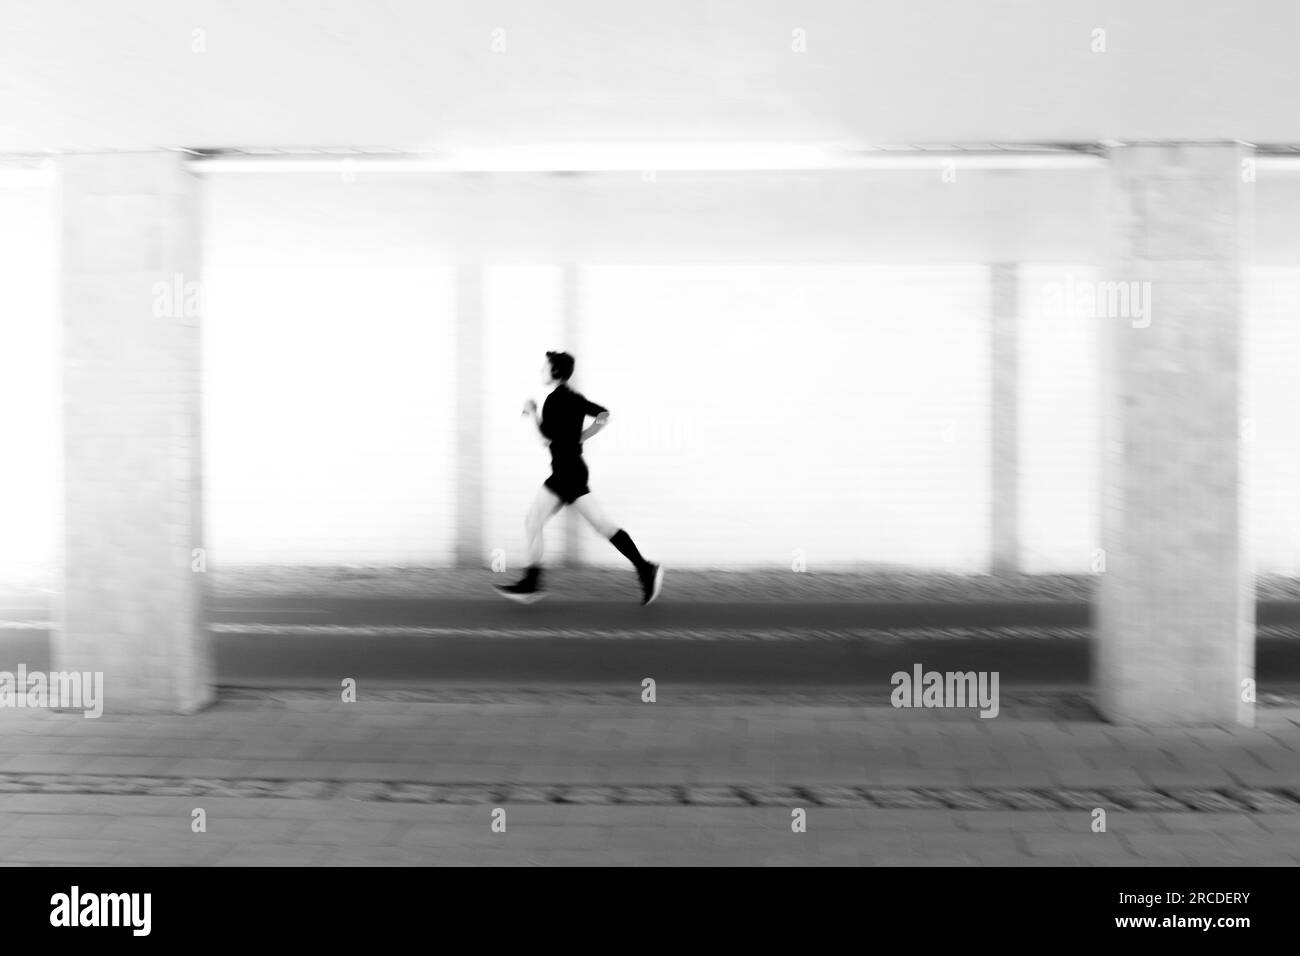 Kreatives Bild der Silhouette eines jungen Menschen beim Bewegungsunschärfe-Joggen Stockfoto